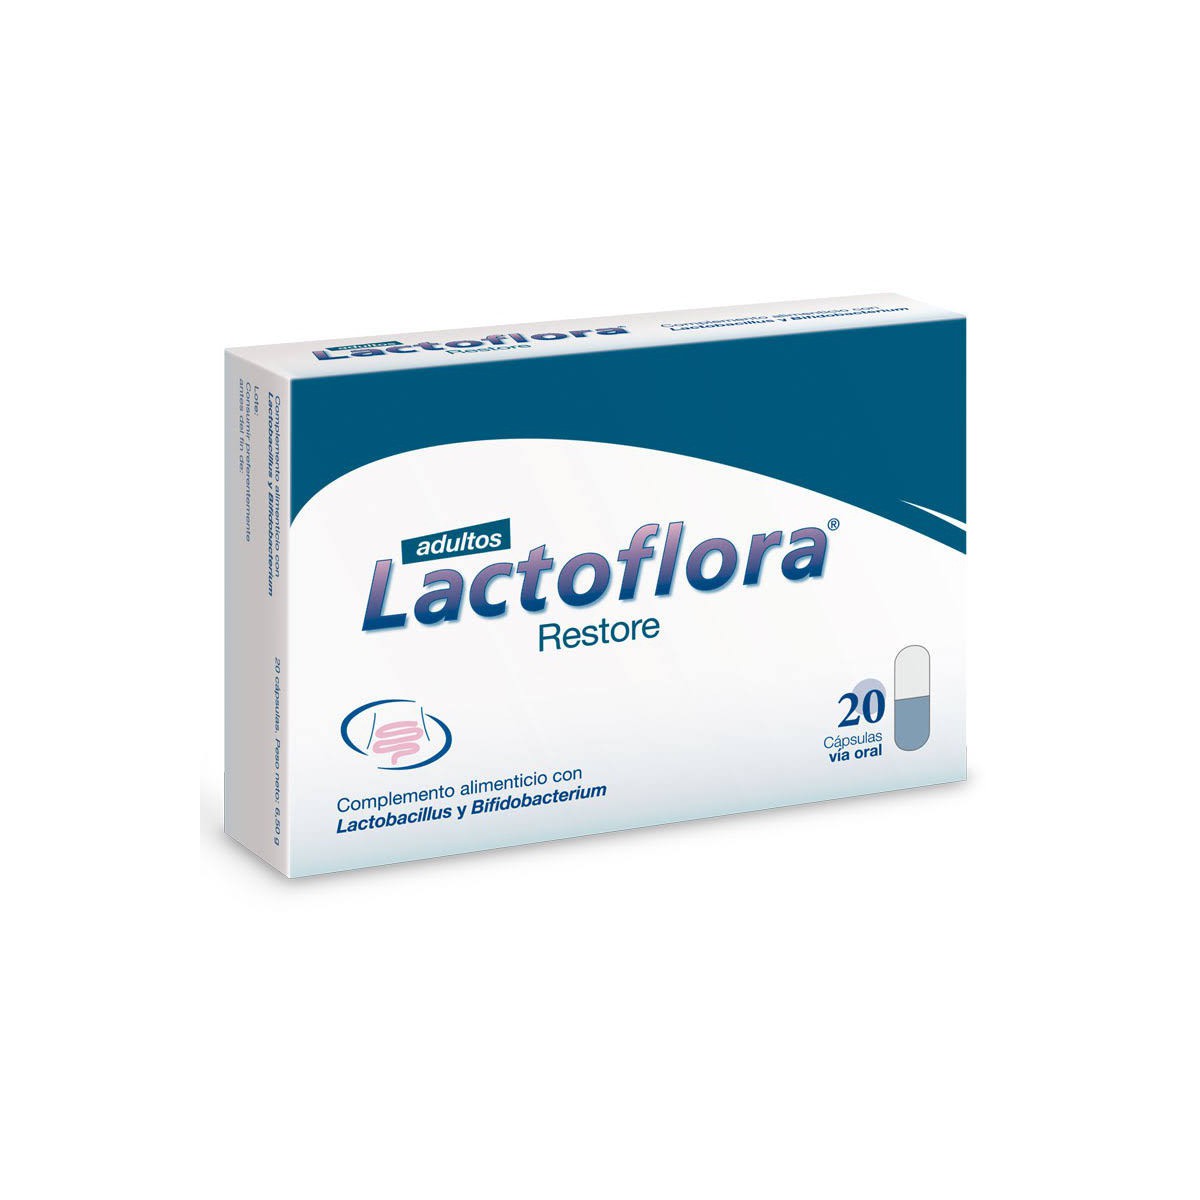 Lactoflora Restore 20 caps